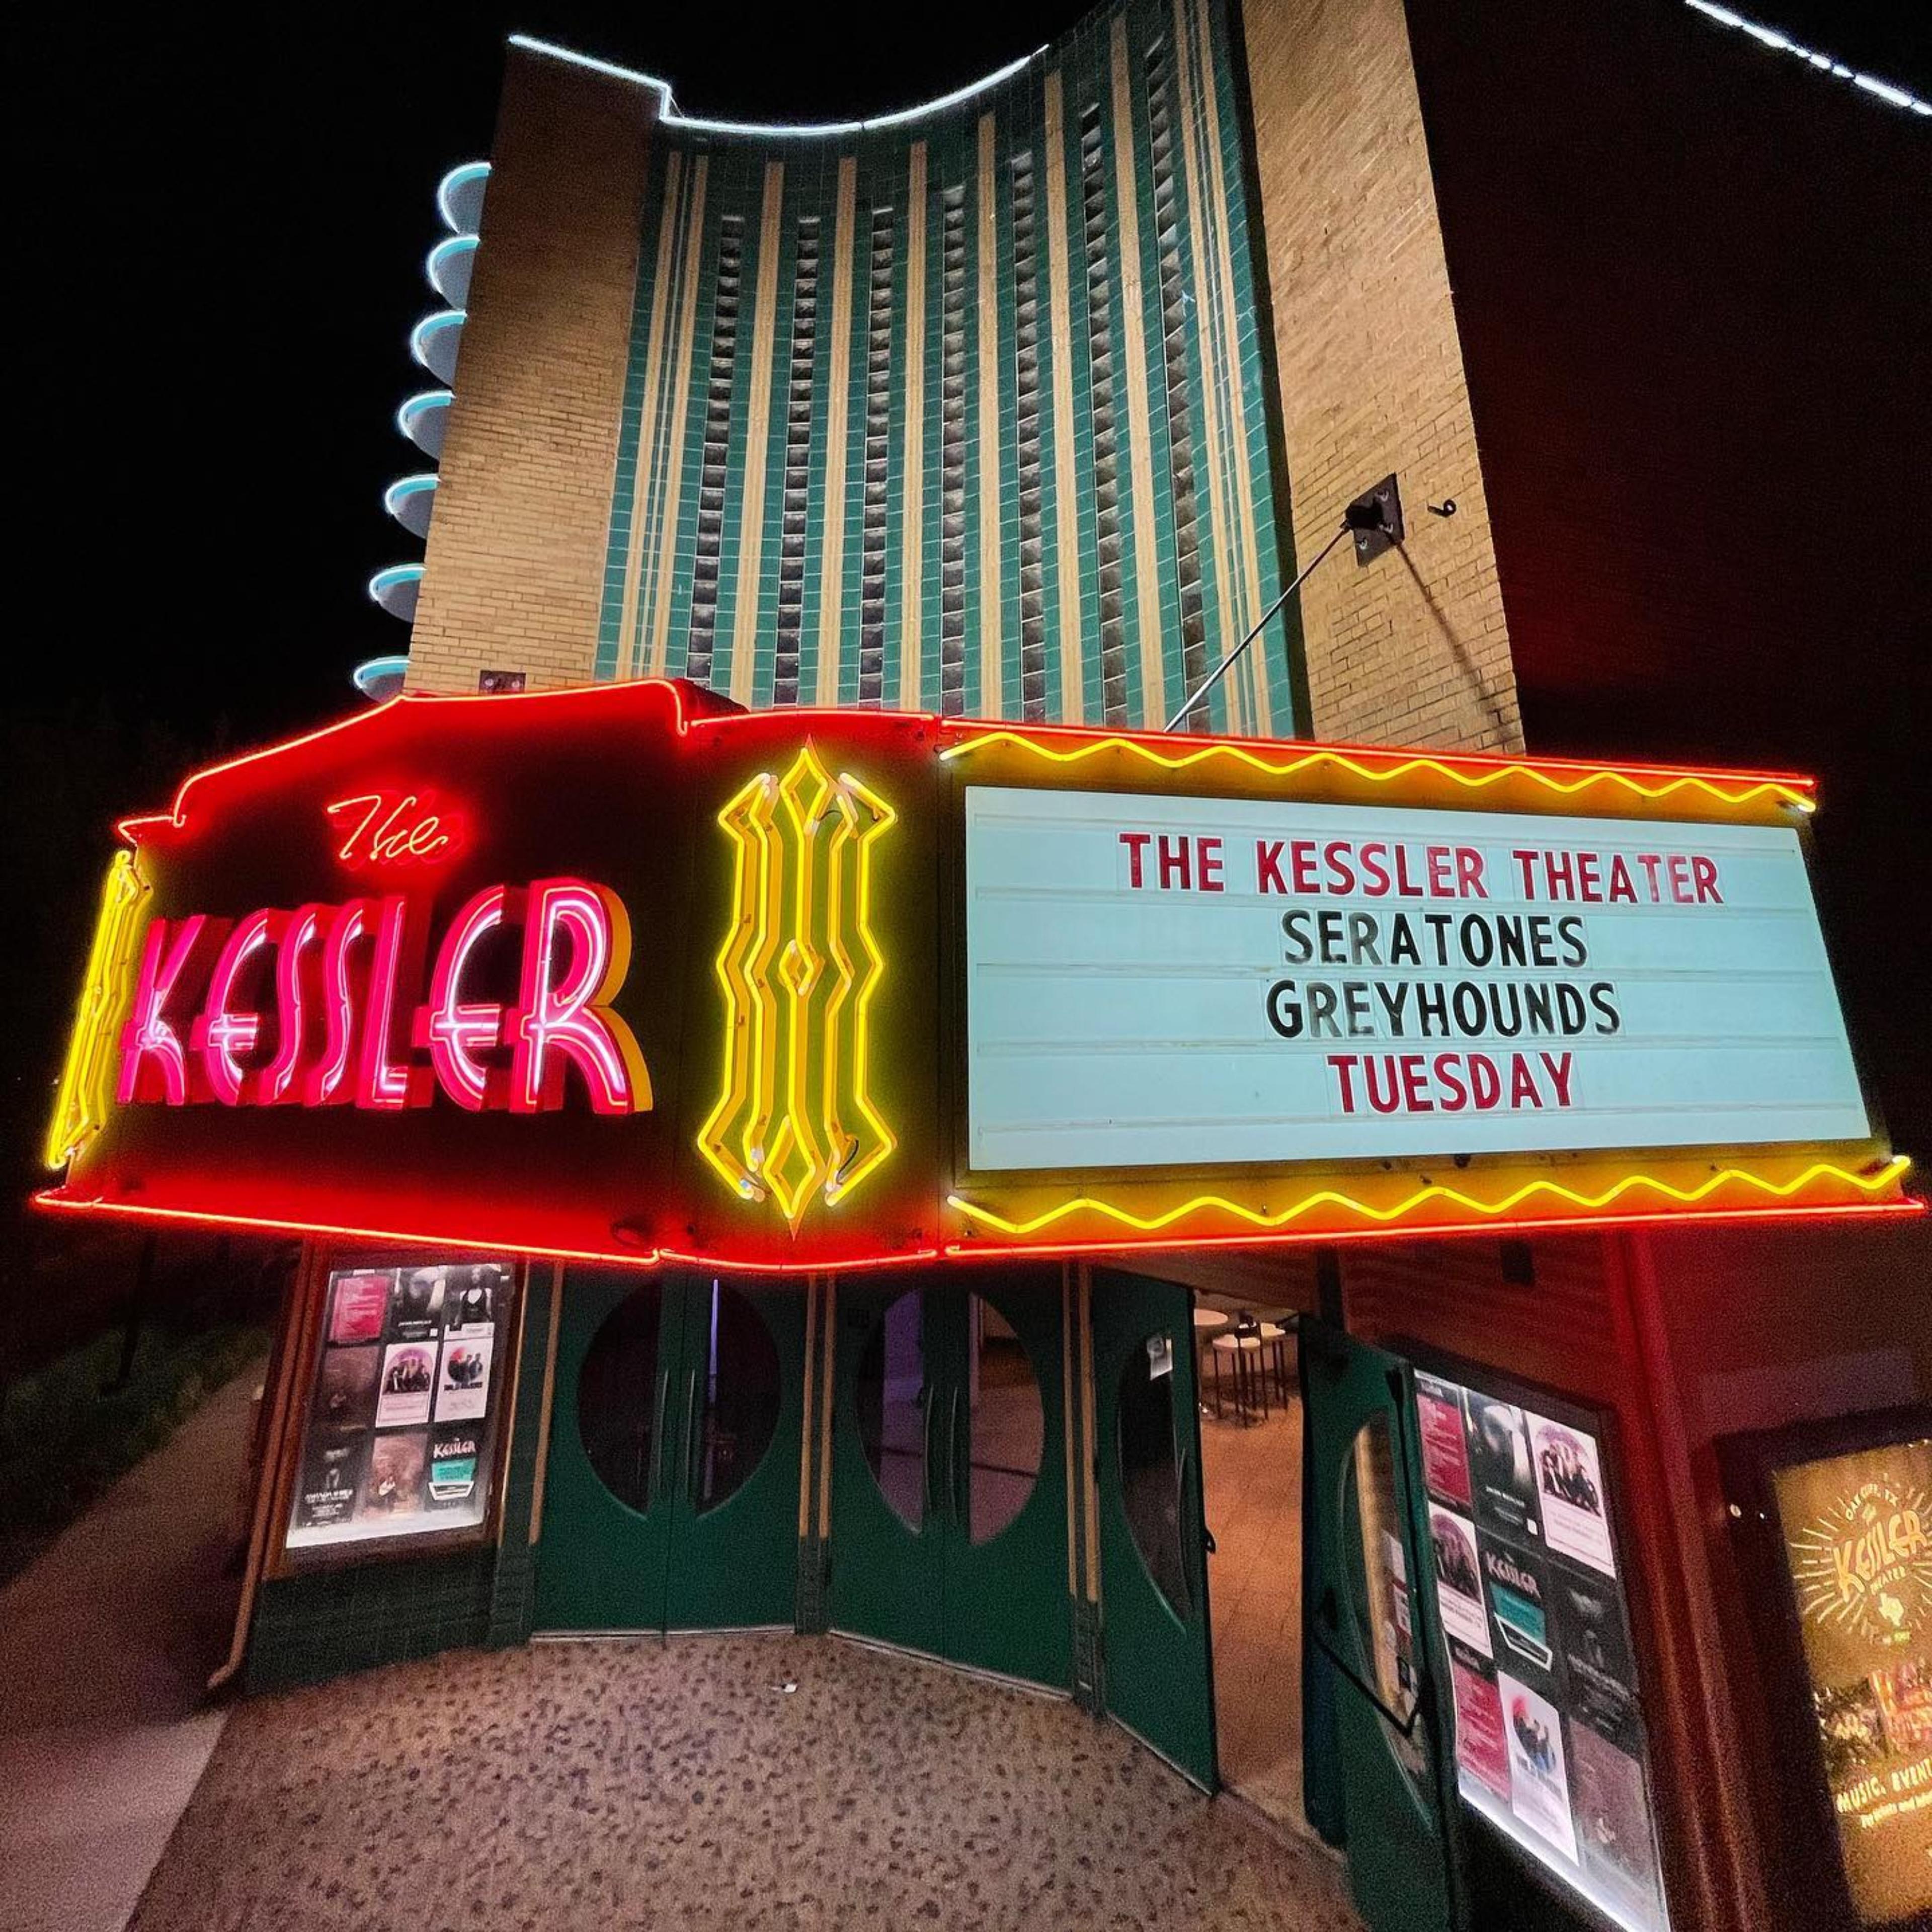 The Kessler Theater